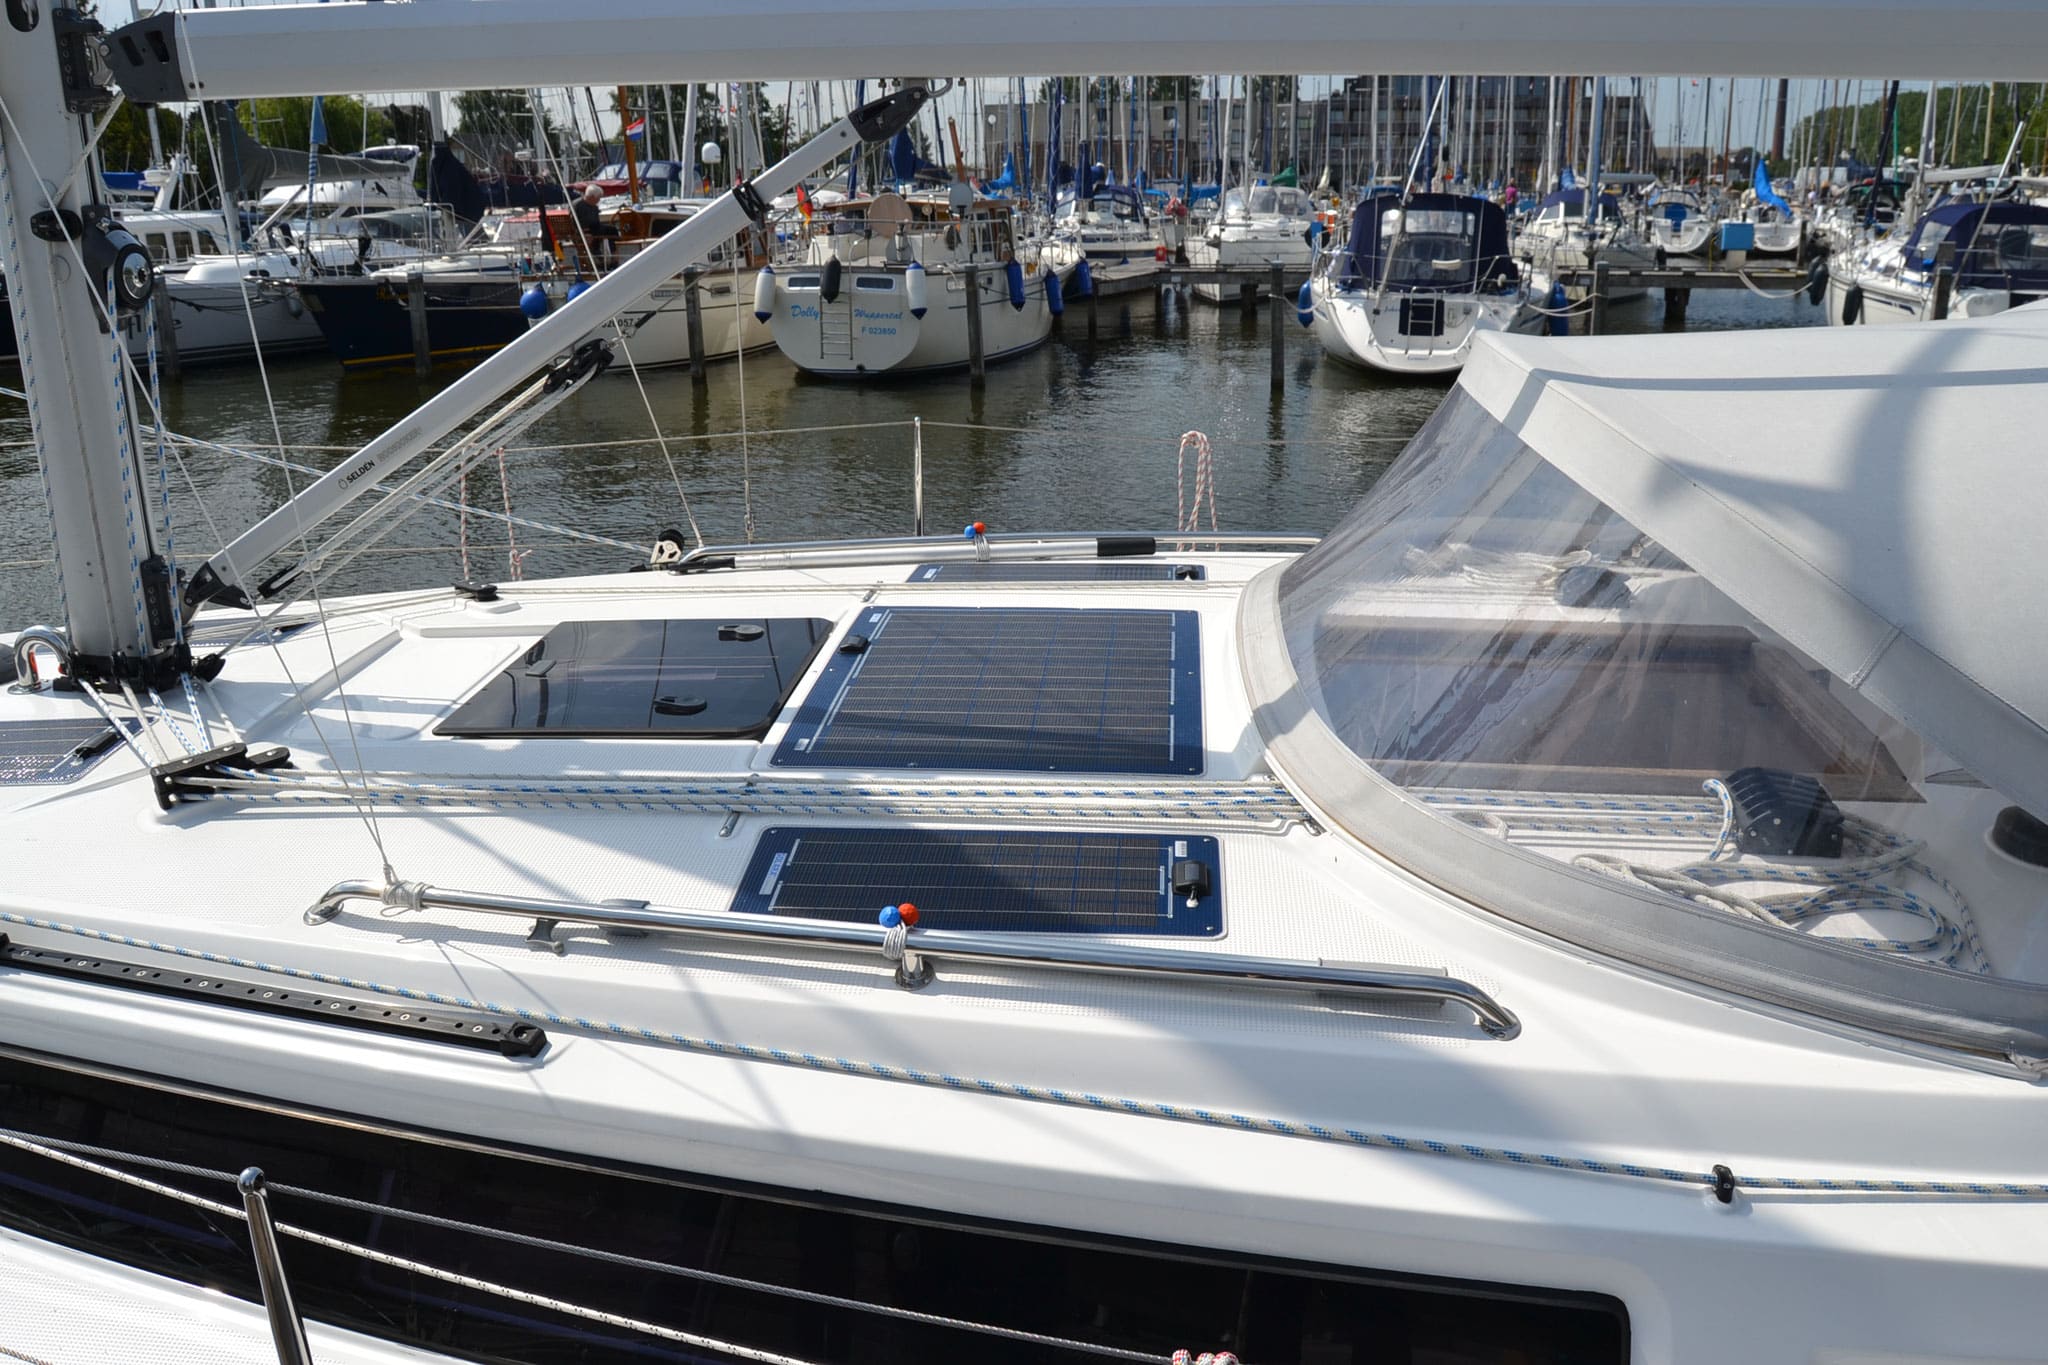 SOLARA Solaranlagen für Boote und Segelyachten